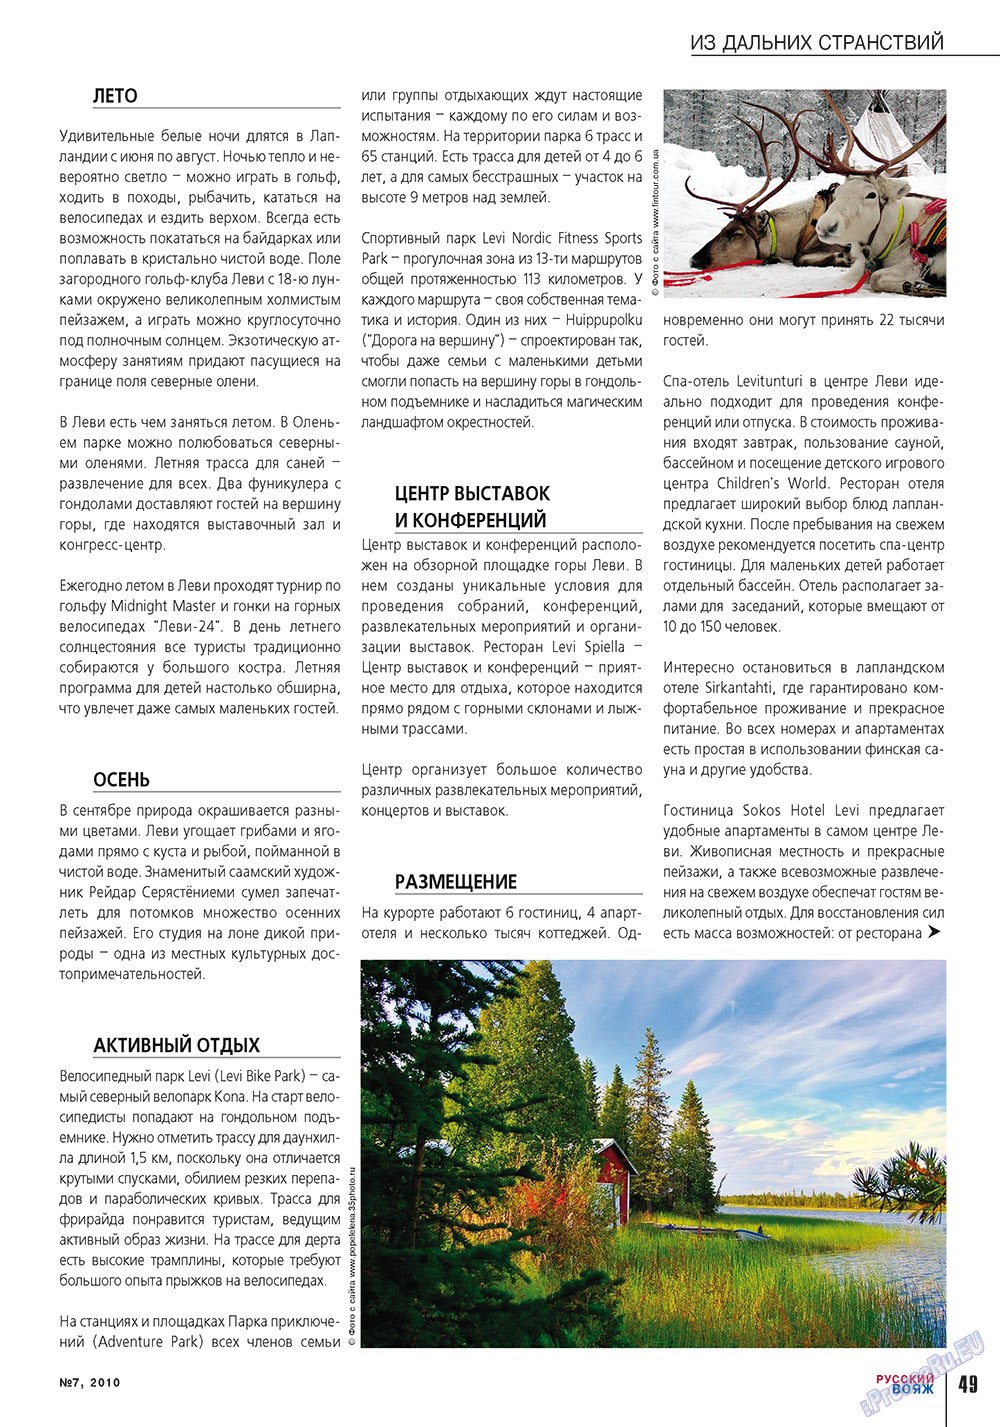 Русский вояж (журнал). 2010 год, номер 7, стр. 49